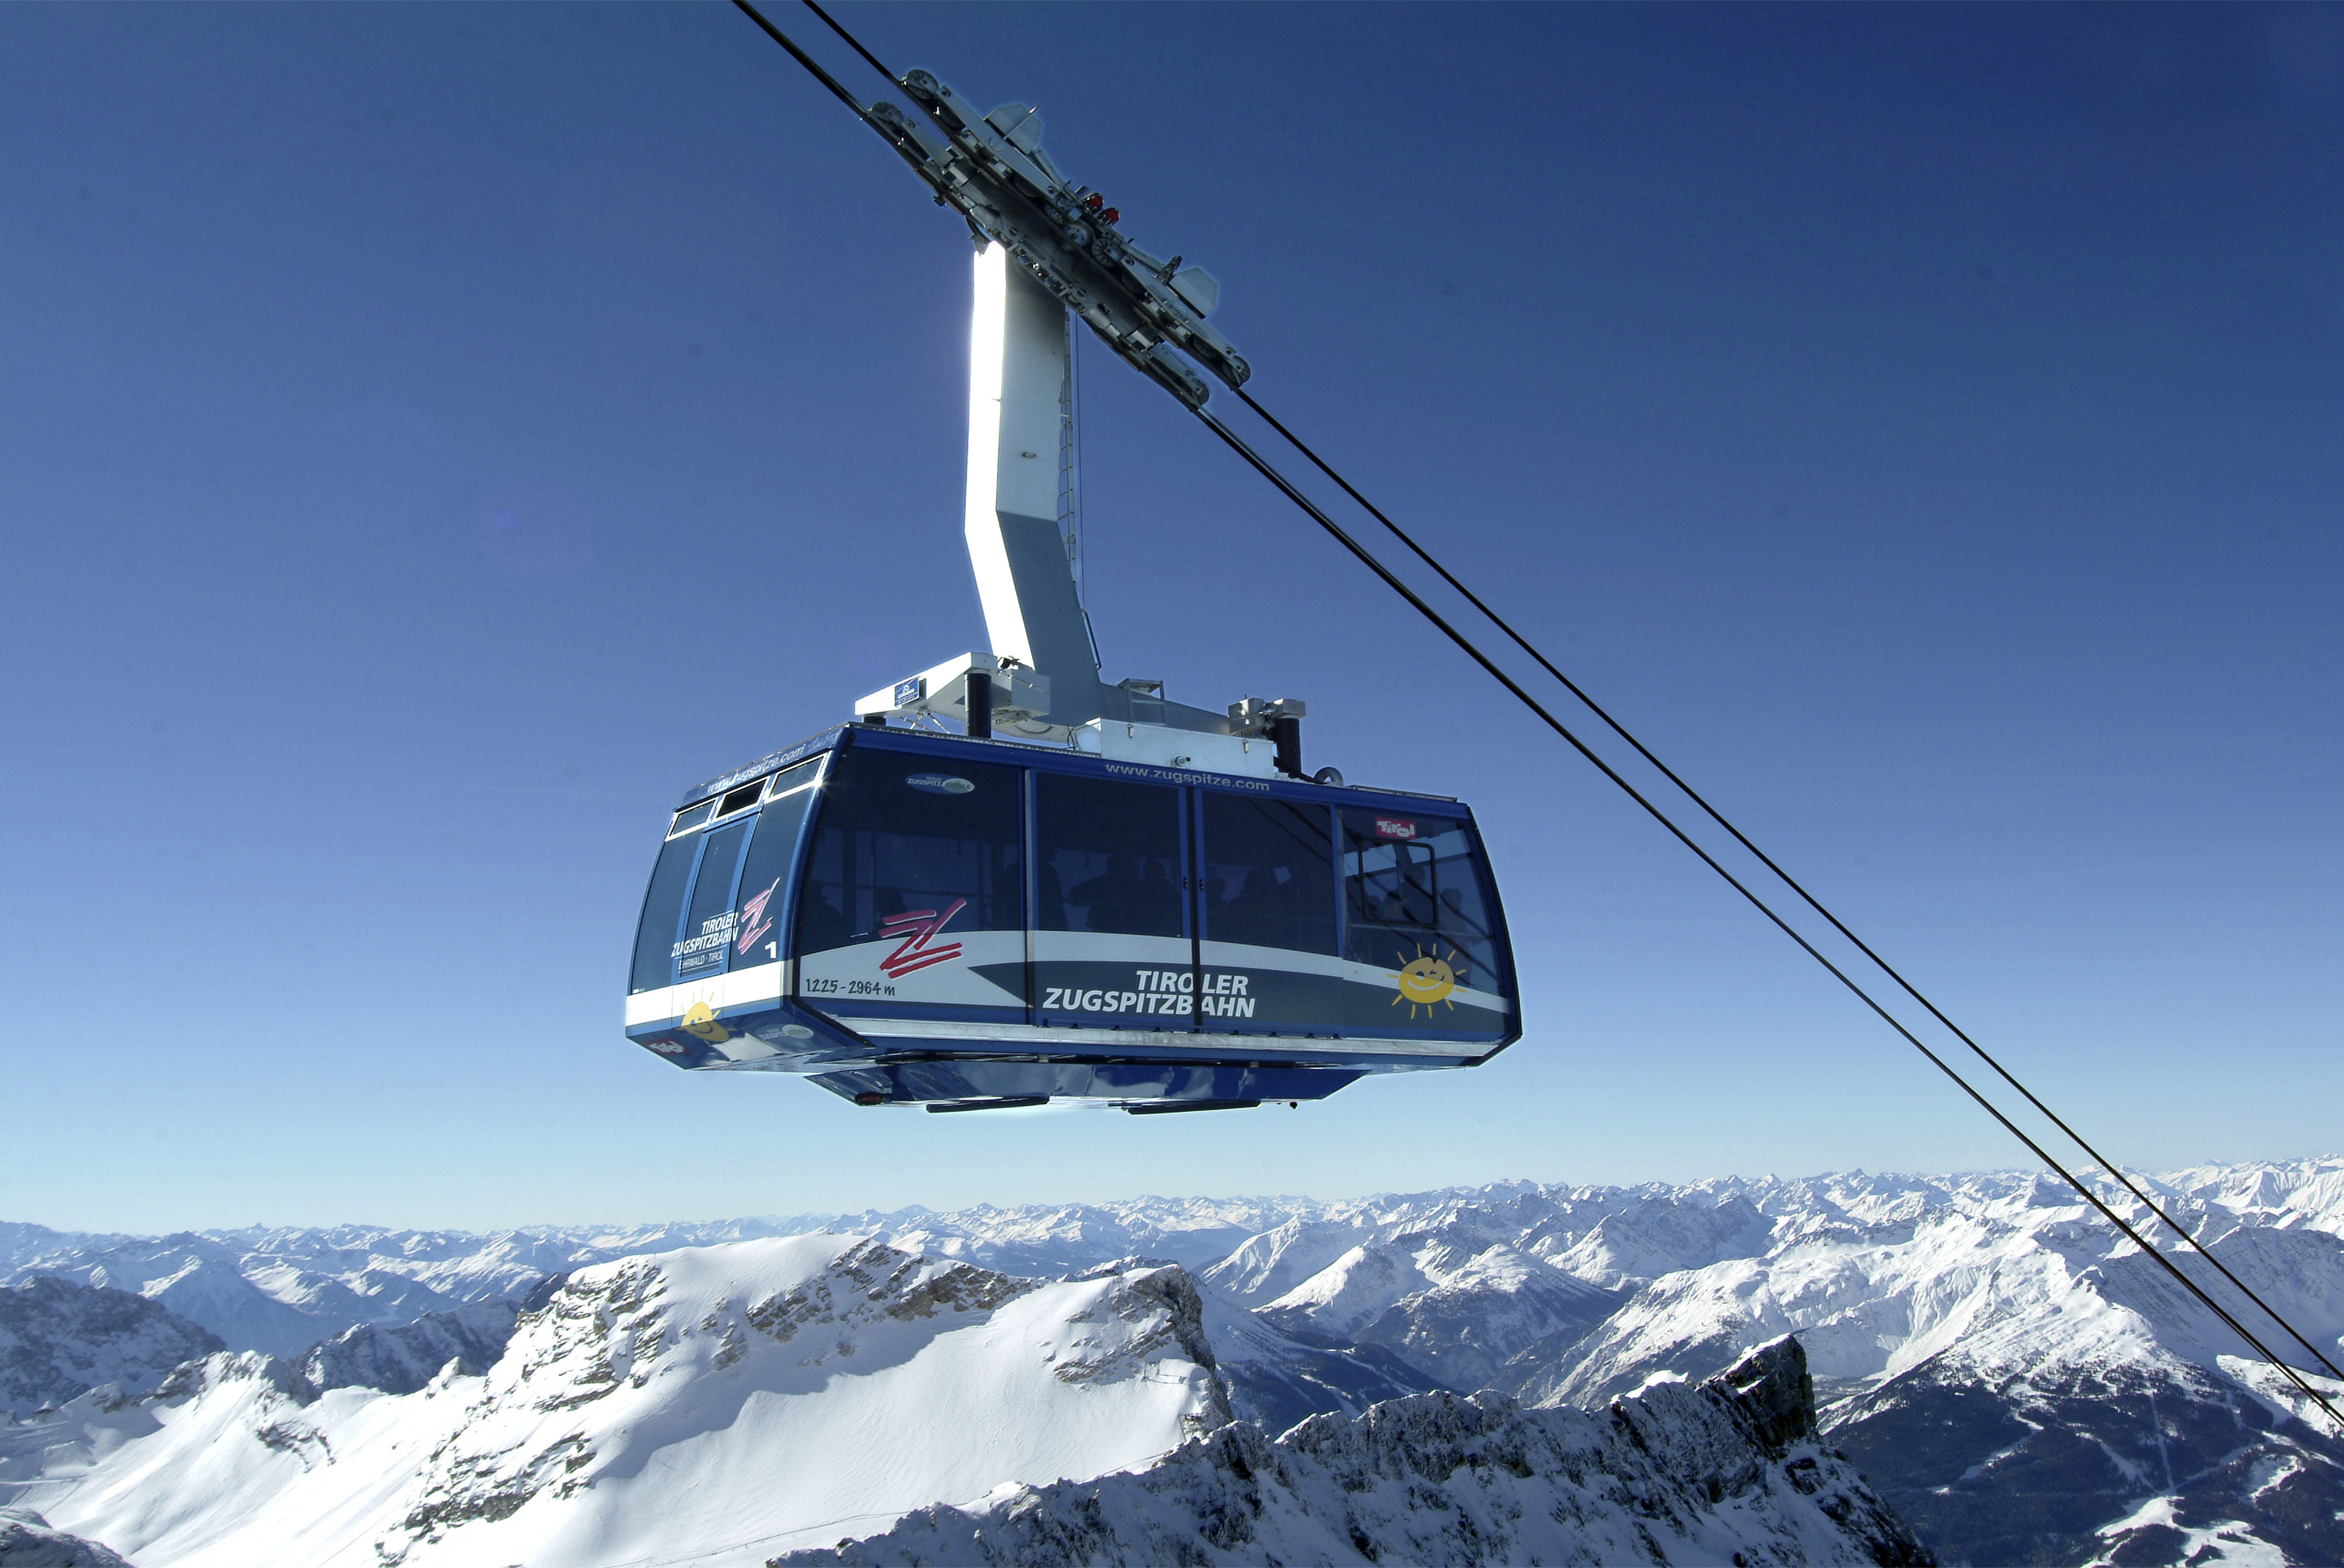 Tiroler Zugspitzbahn Winter - Österreich - uschi liebl pr, Top 10 PR-Agentur Tourismus, Lifestyle